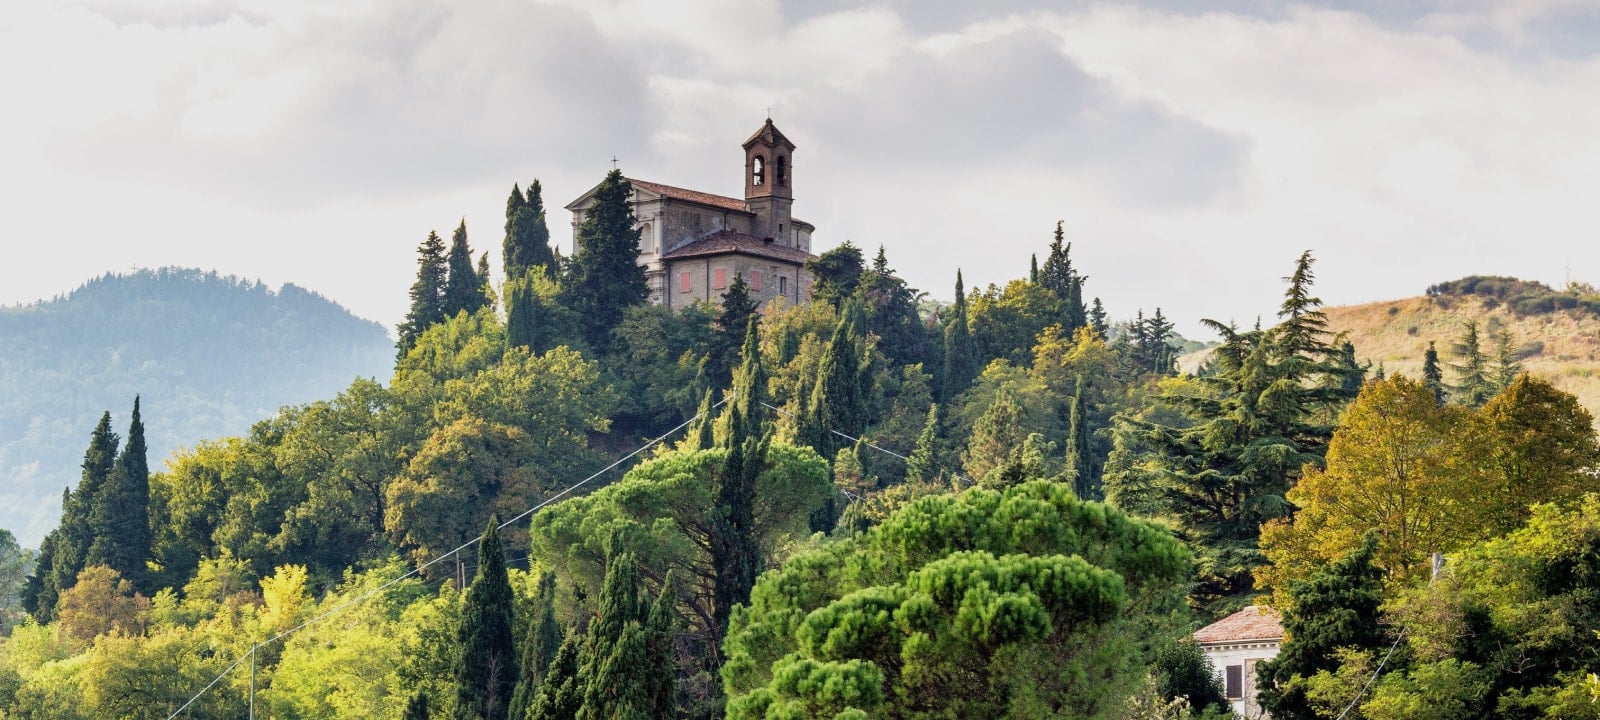 Erfahren Sie mehr über <i>la bellavita </i>in der Romagna